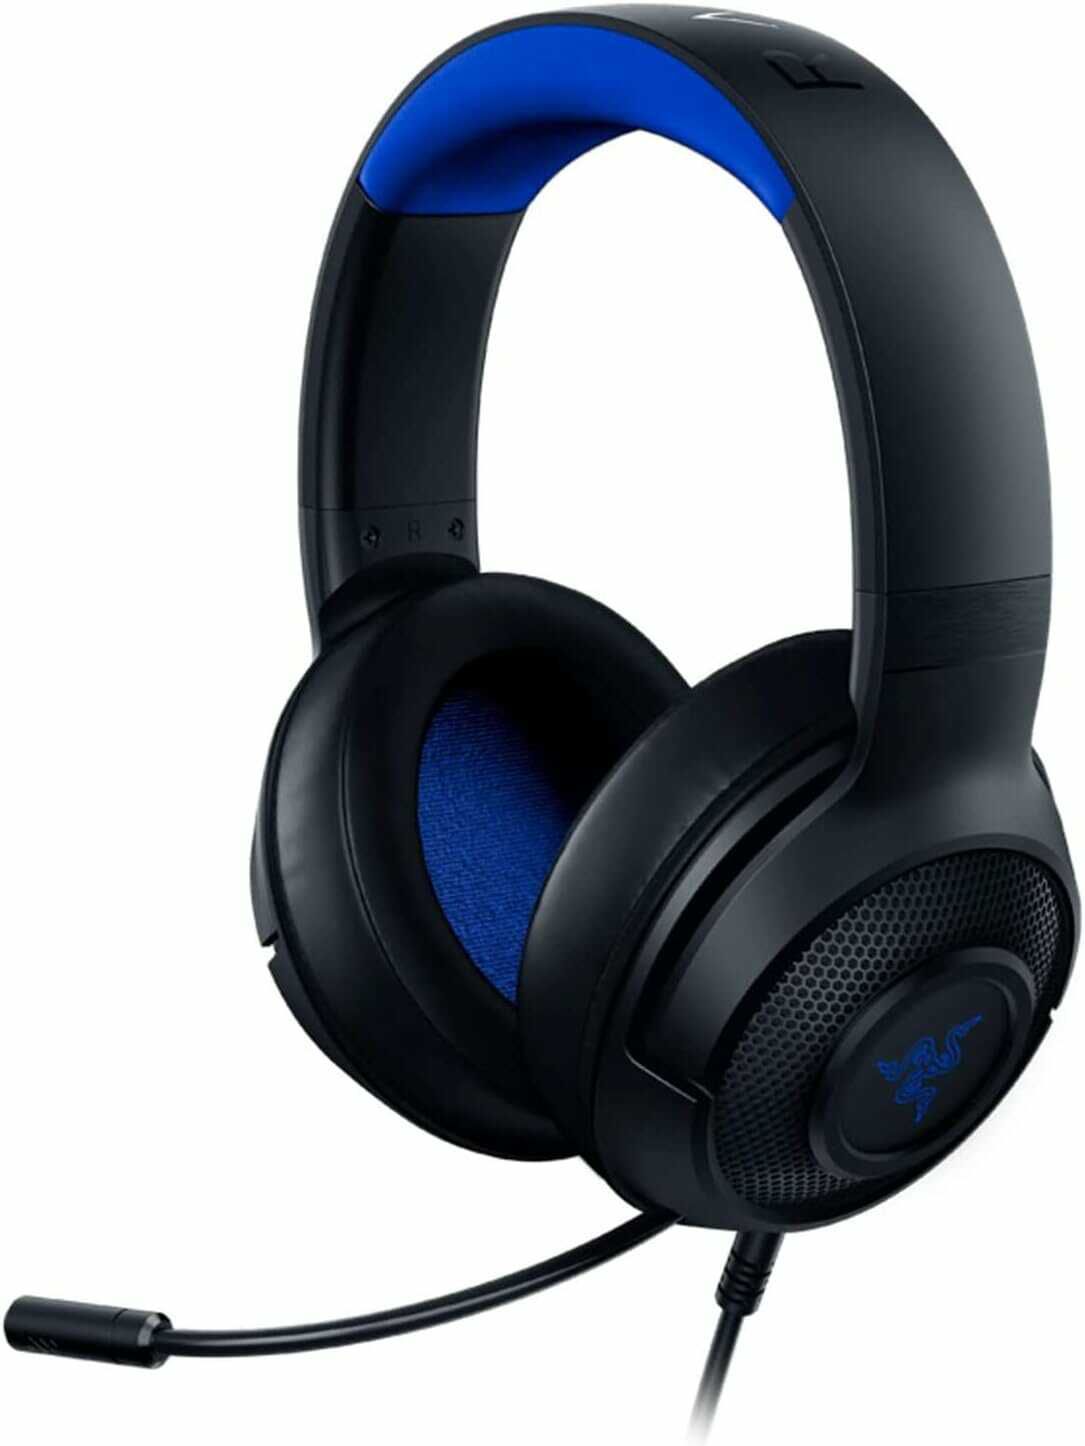 Razer Kraken X 7.1 Surround Sound Gaming Headset für 33,06€ statt 52€